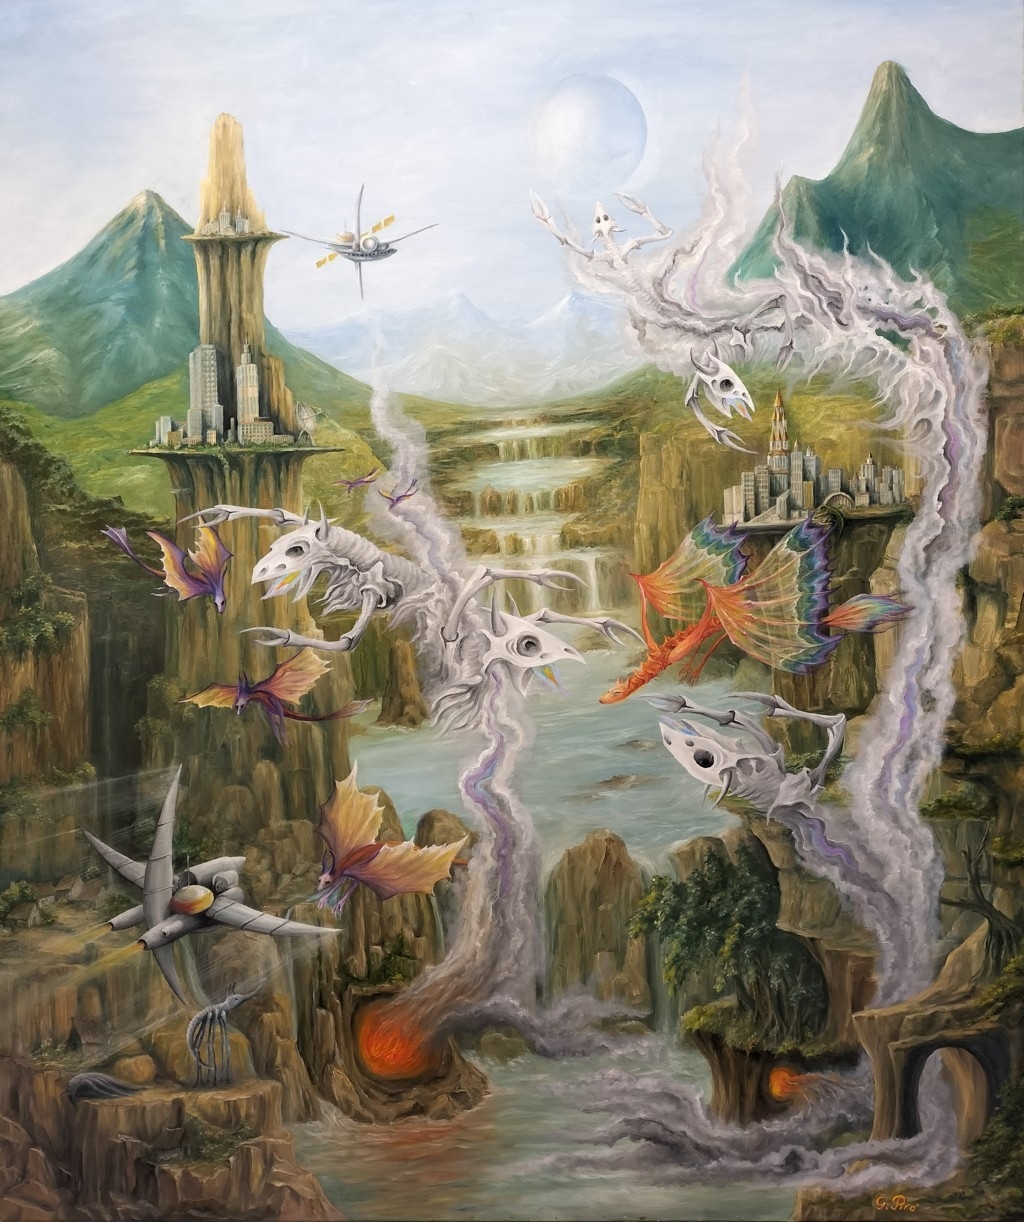 olja på duk, oljemålningar, utställning av målningar,
fantasykonst med surrealistiskt motiv, fantasymålningar med surrealistiskt motiv, Gregory Pyra Piro